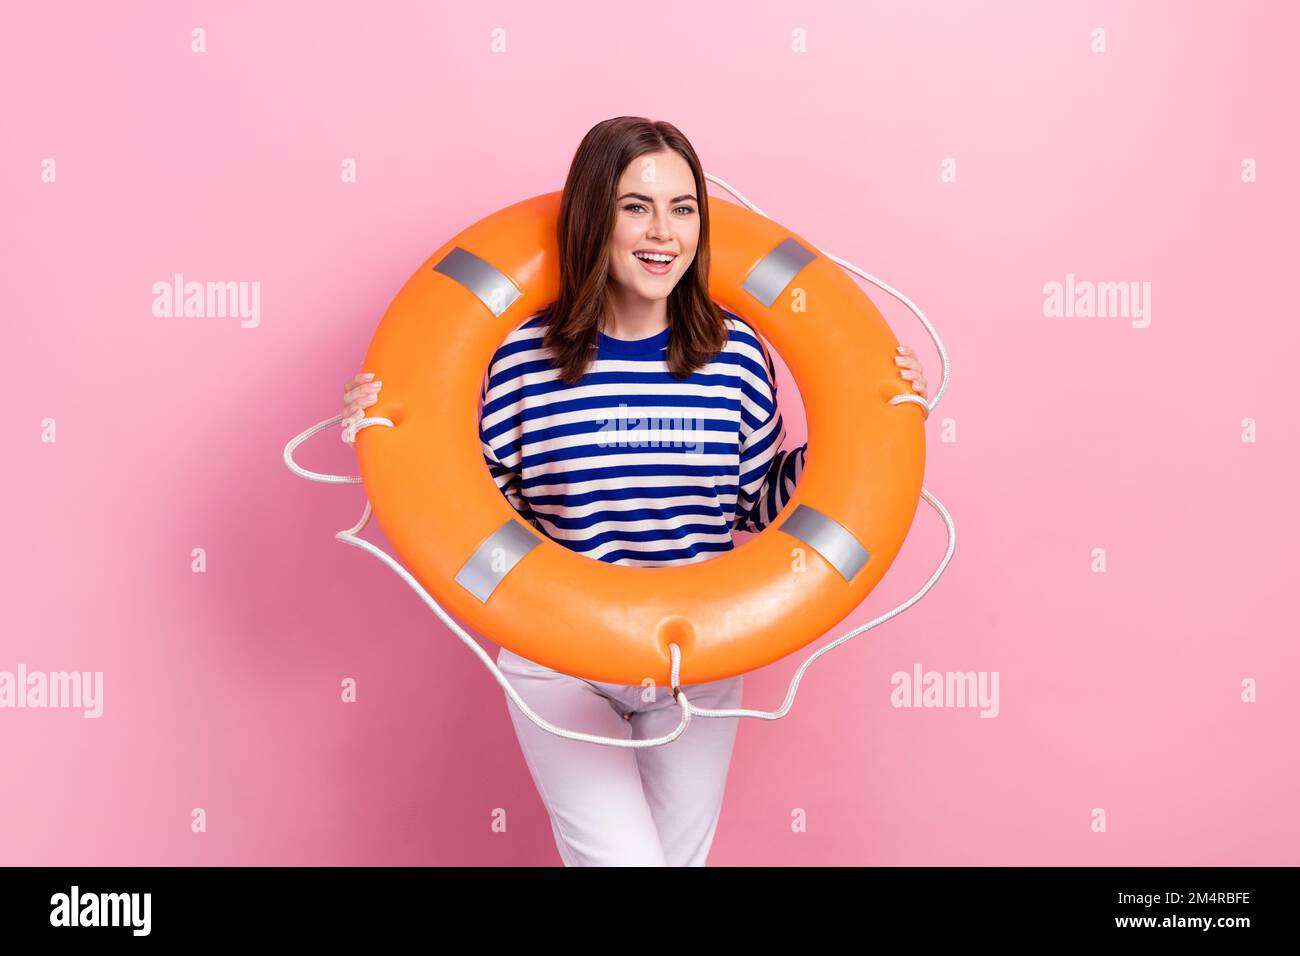 Foto eines fröhlichen, netten Mädchenlächelns, halten Sie den aufblasbaren Kreisring isoliert auf pinkfarbenem Hintergrund Stockfoto